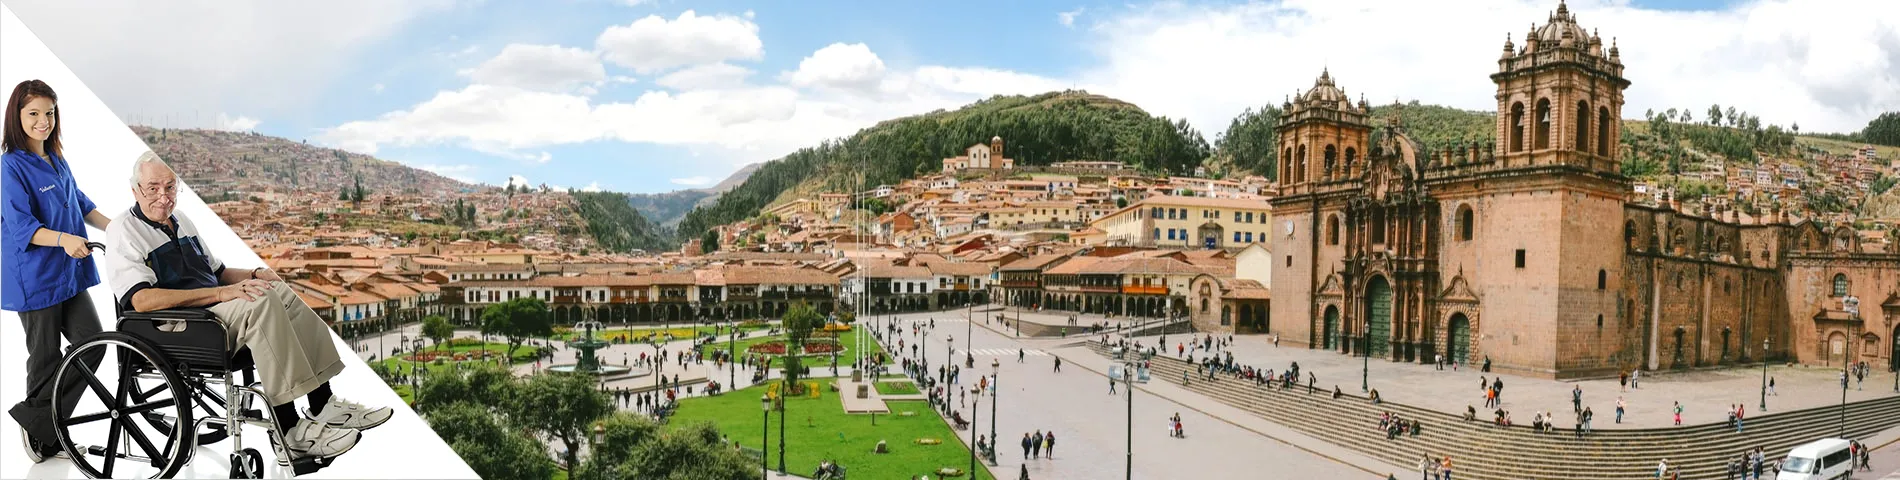 Cuzco - Spanisch & Freiwilligenarbeit